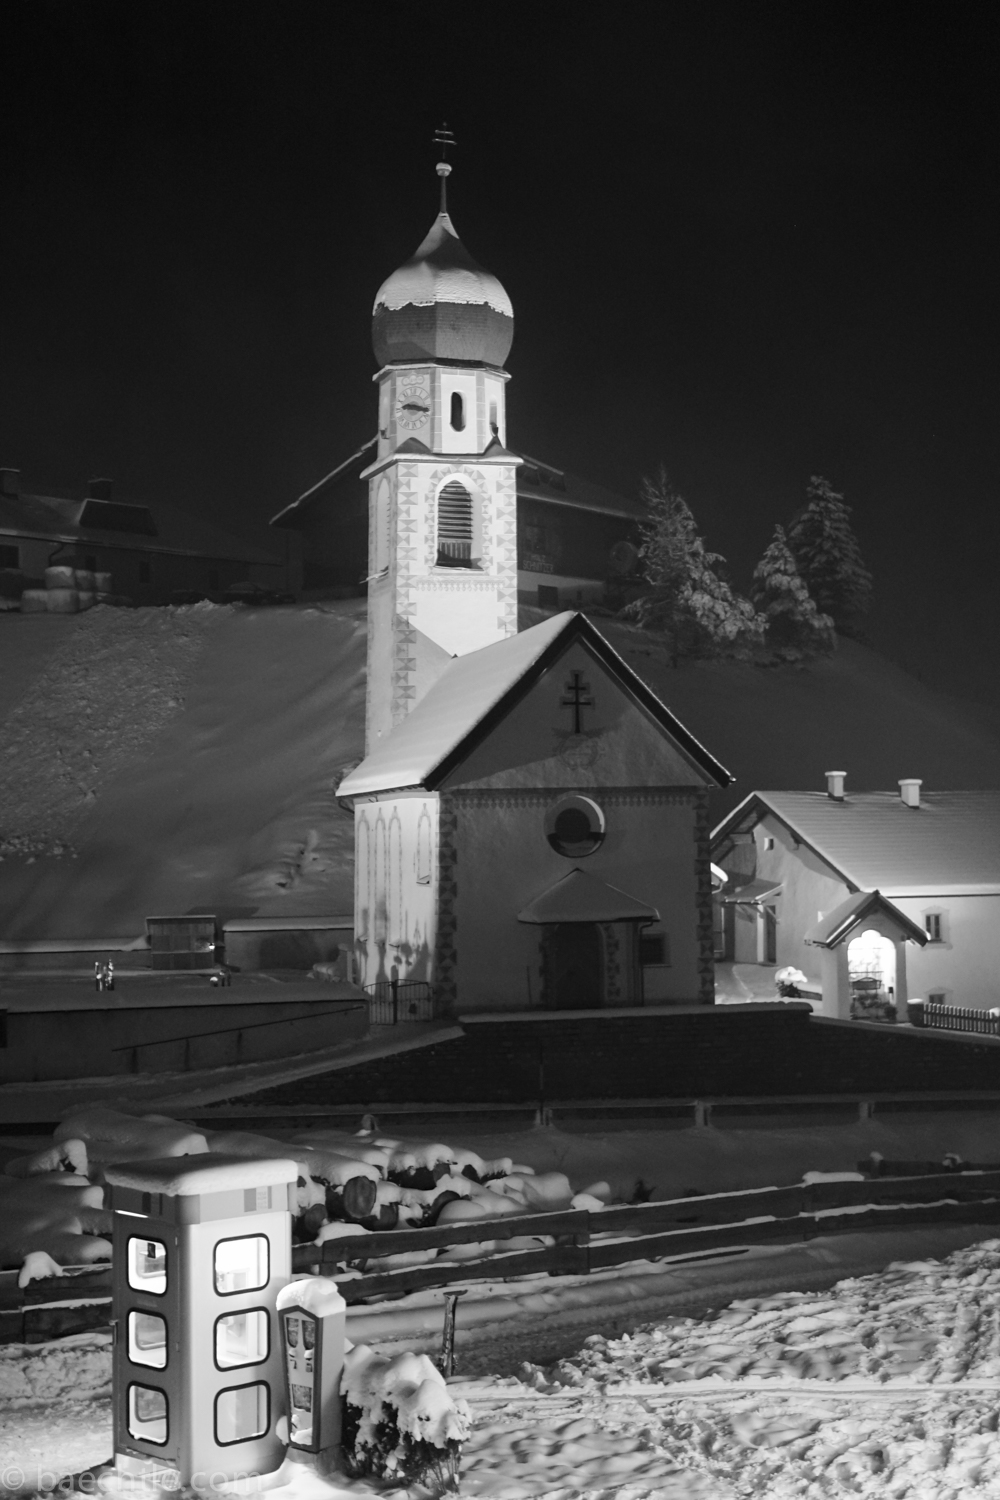 Nachtaufnahme der Kirche in Niederthai, Tirol. Sony a7, Zeiss 1,8/55, ISO 3200, f 2,2, t 1/13. In LR Kontrasterhöhung und leichtes Anheben der dunklen Mitteltöne. Rauschreduzierung Luminanz +14, Farbe +19, Schärfen +27. 